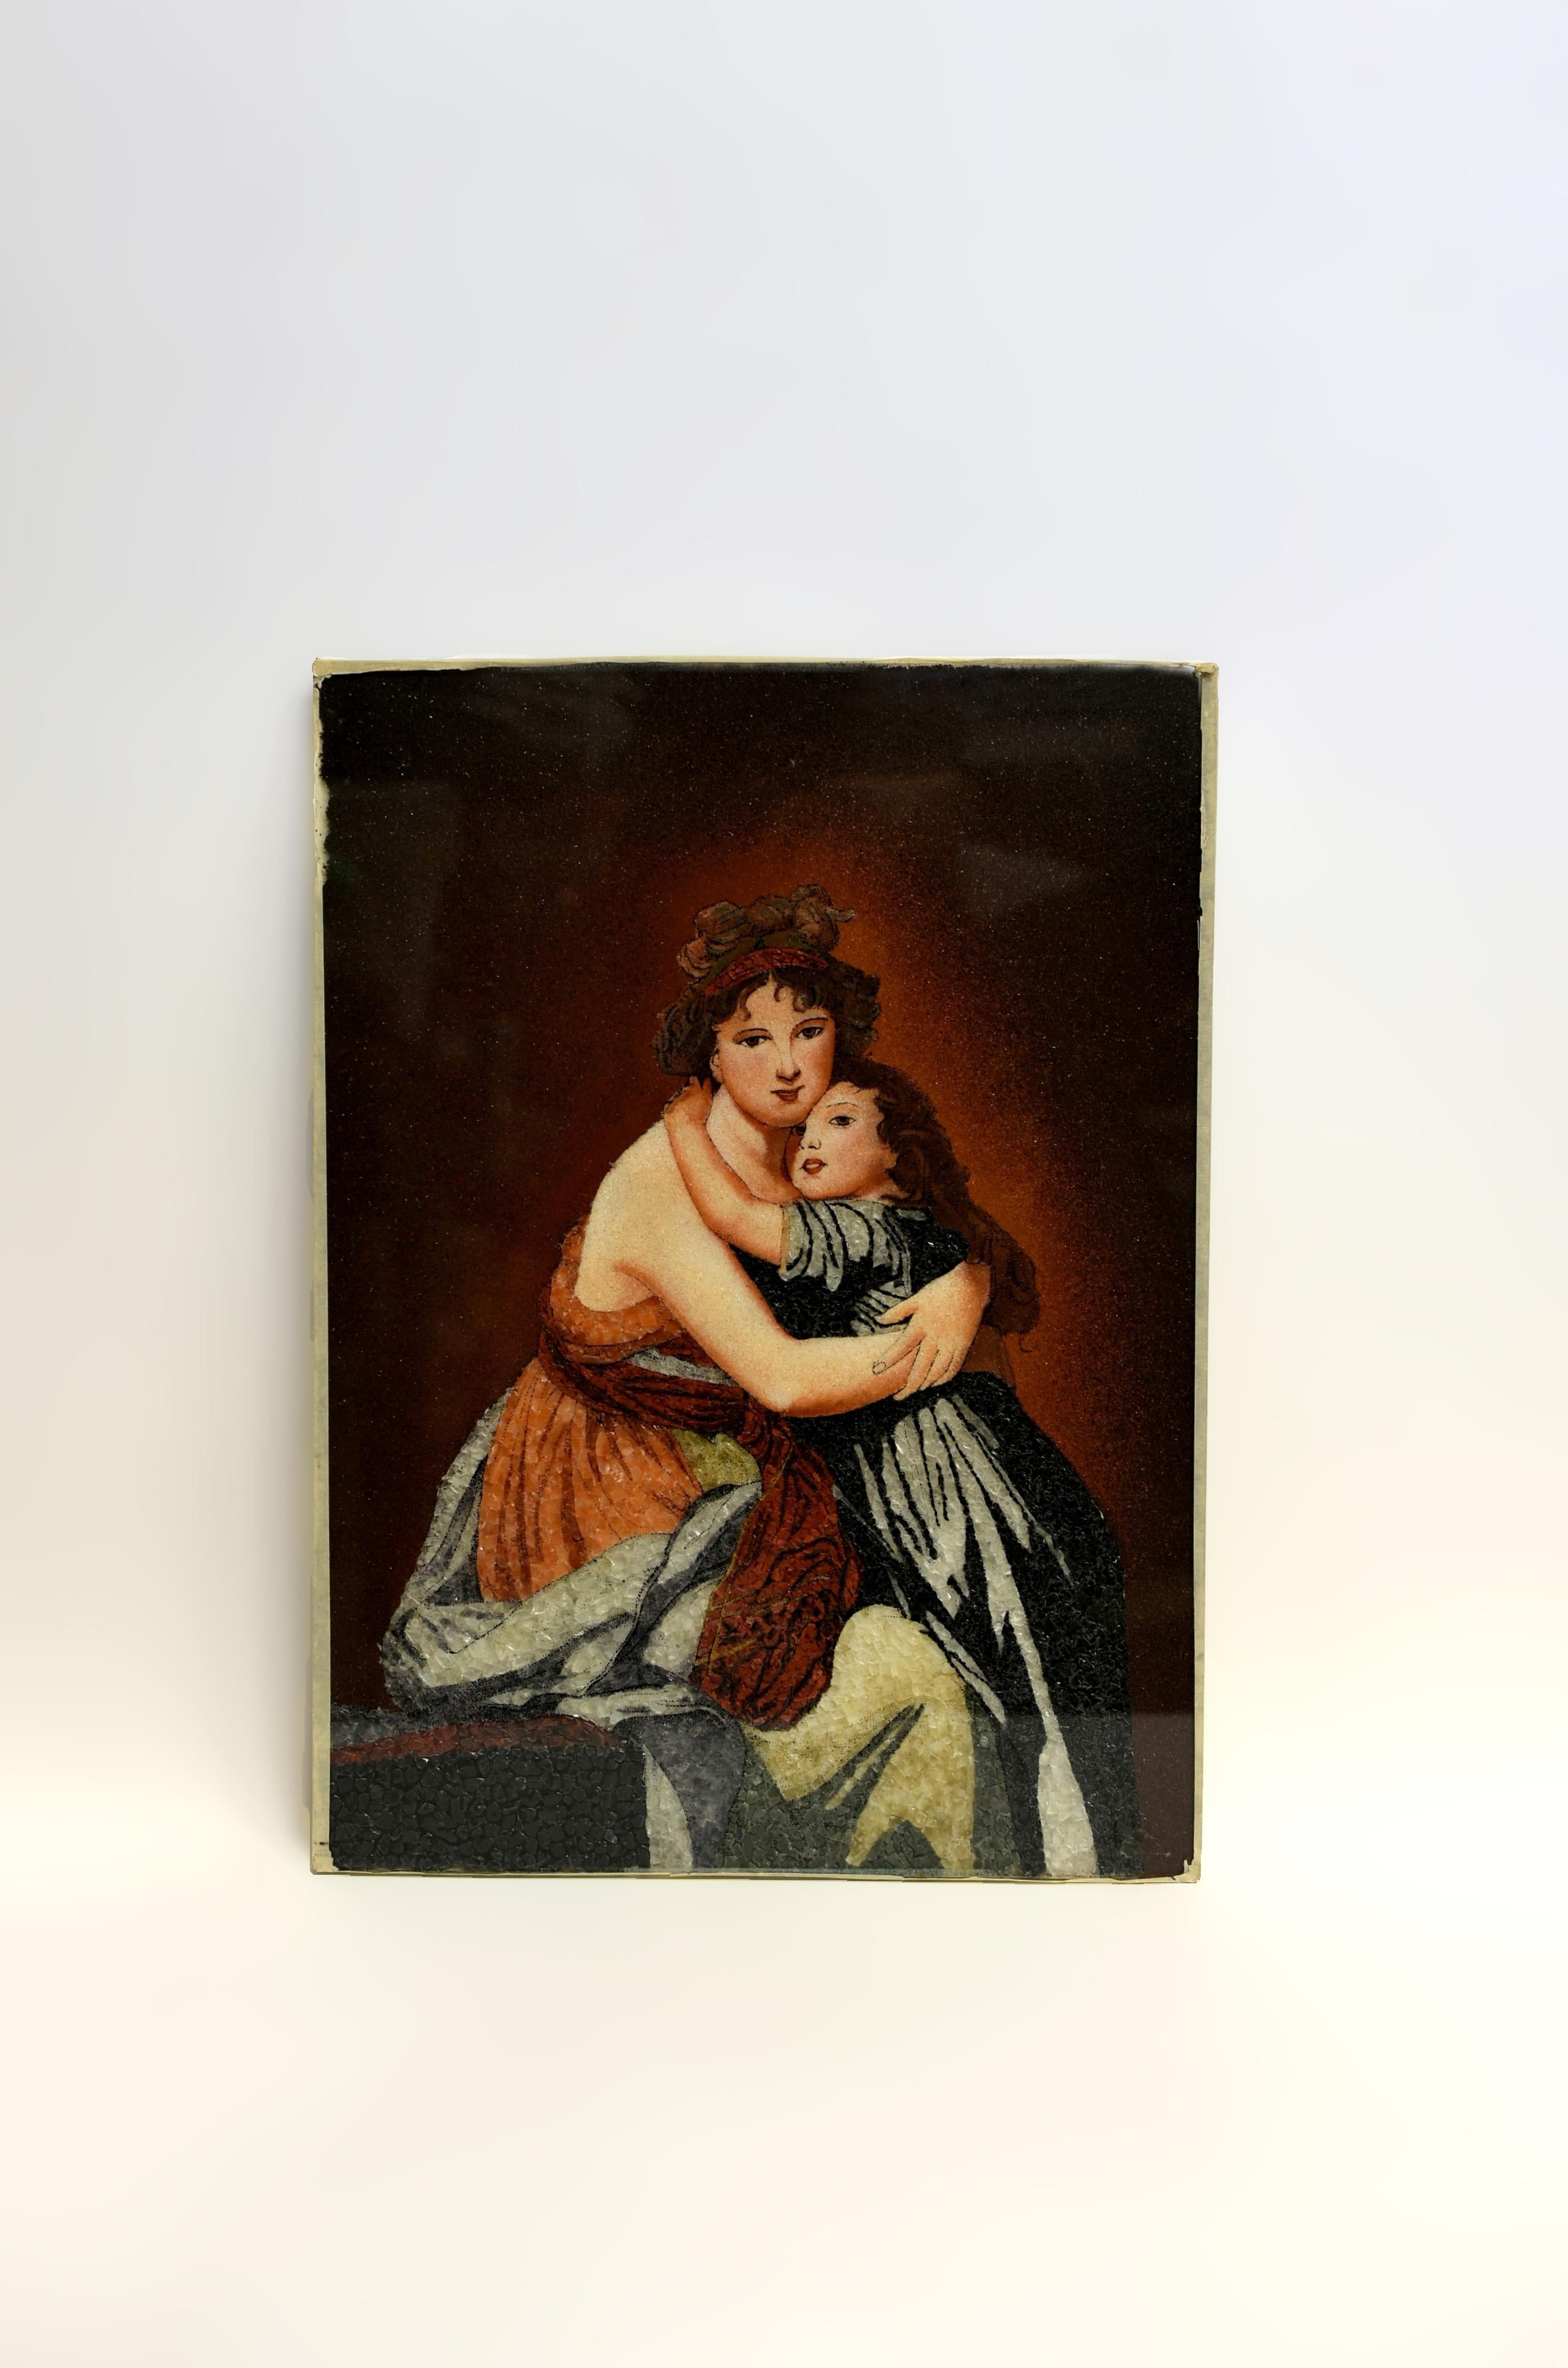 Un chef-d'œuvre serti de pierres précieuses, inspiré de l'autoportrait d'Elisabeth Vigee Le Brun avec sa fille Julie, réalisé au XVIIIe siècle, qui illustre le lien intemporel entre une mère et son enfant. Exécutées sur l'envers du verre et